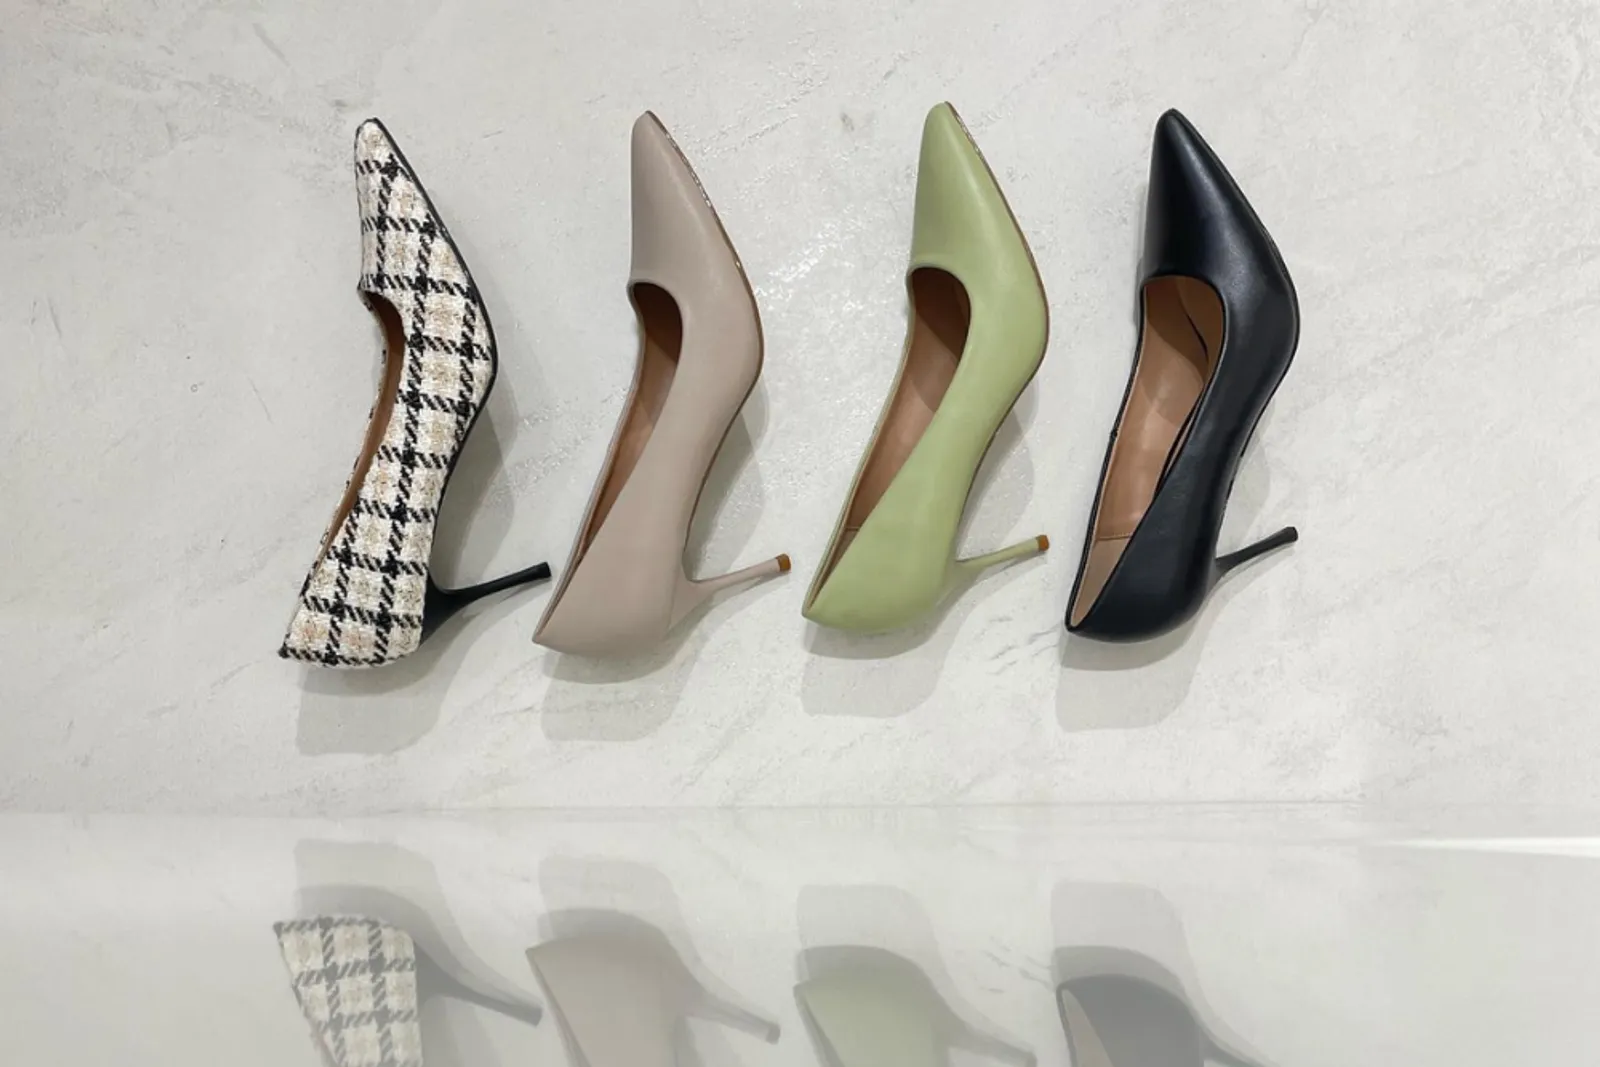 7 Toko Sepatu Terdekat di Jogja yang Bagus untuk Perempuan